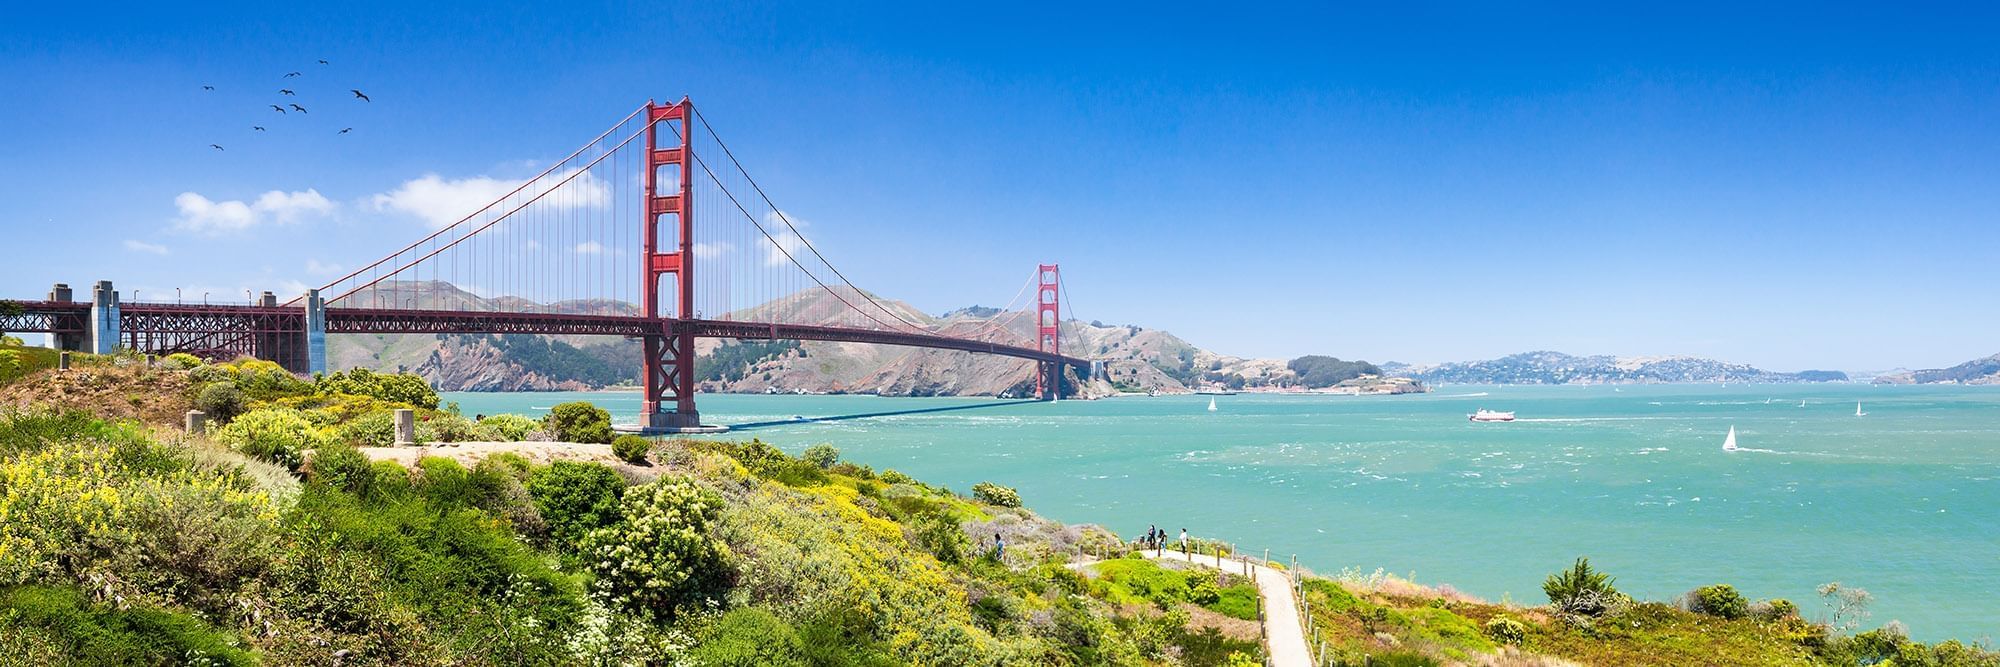 جسر البوابة الذهبية (غولدن غيت) في سان فرانسيسكو 